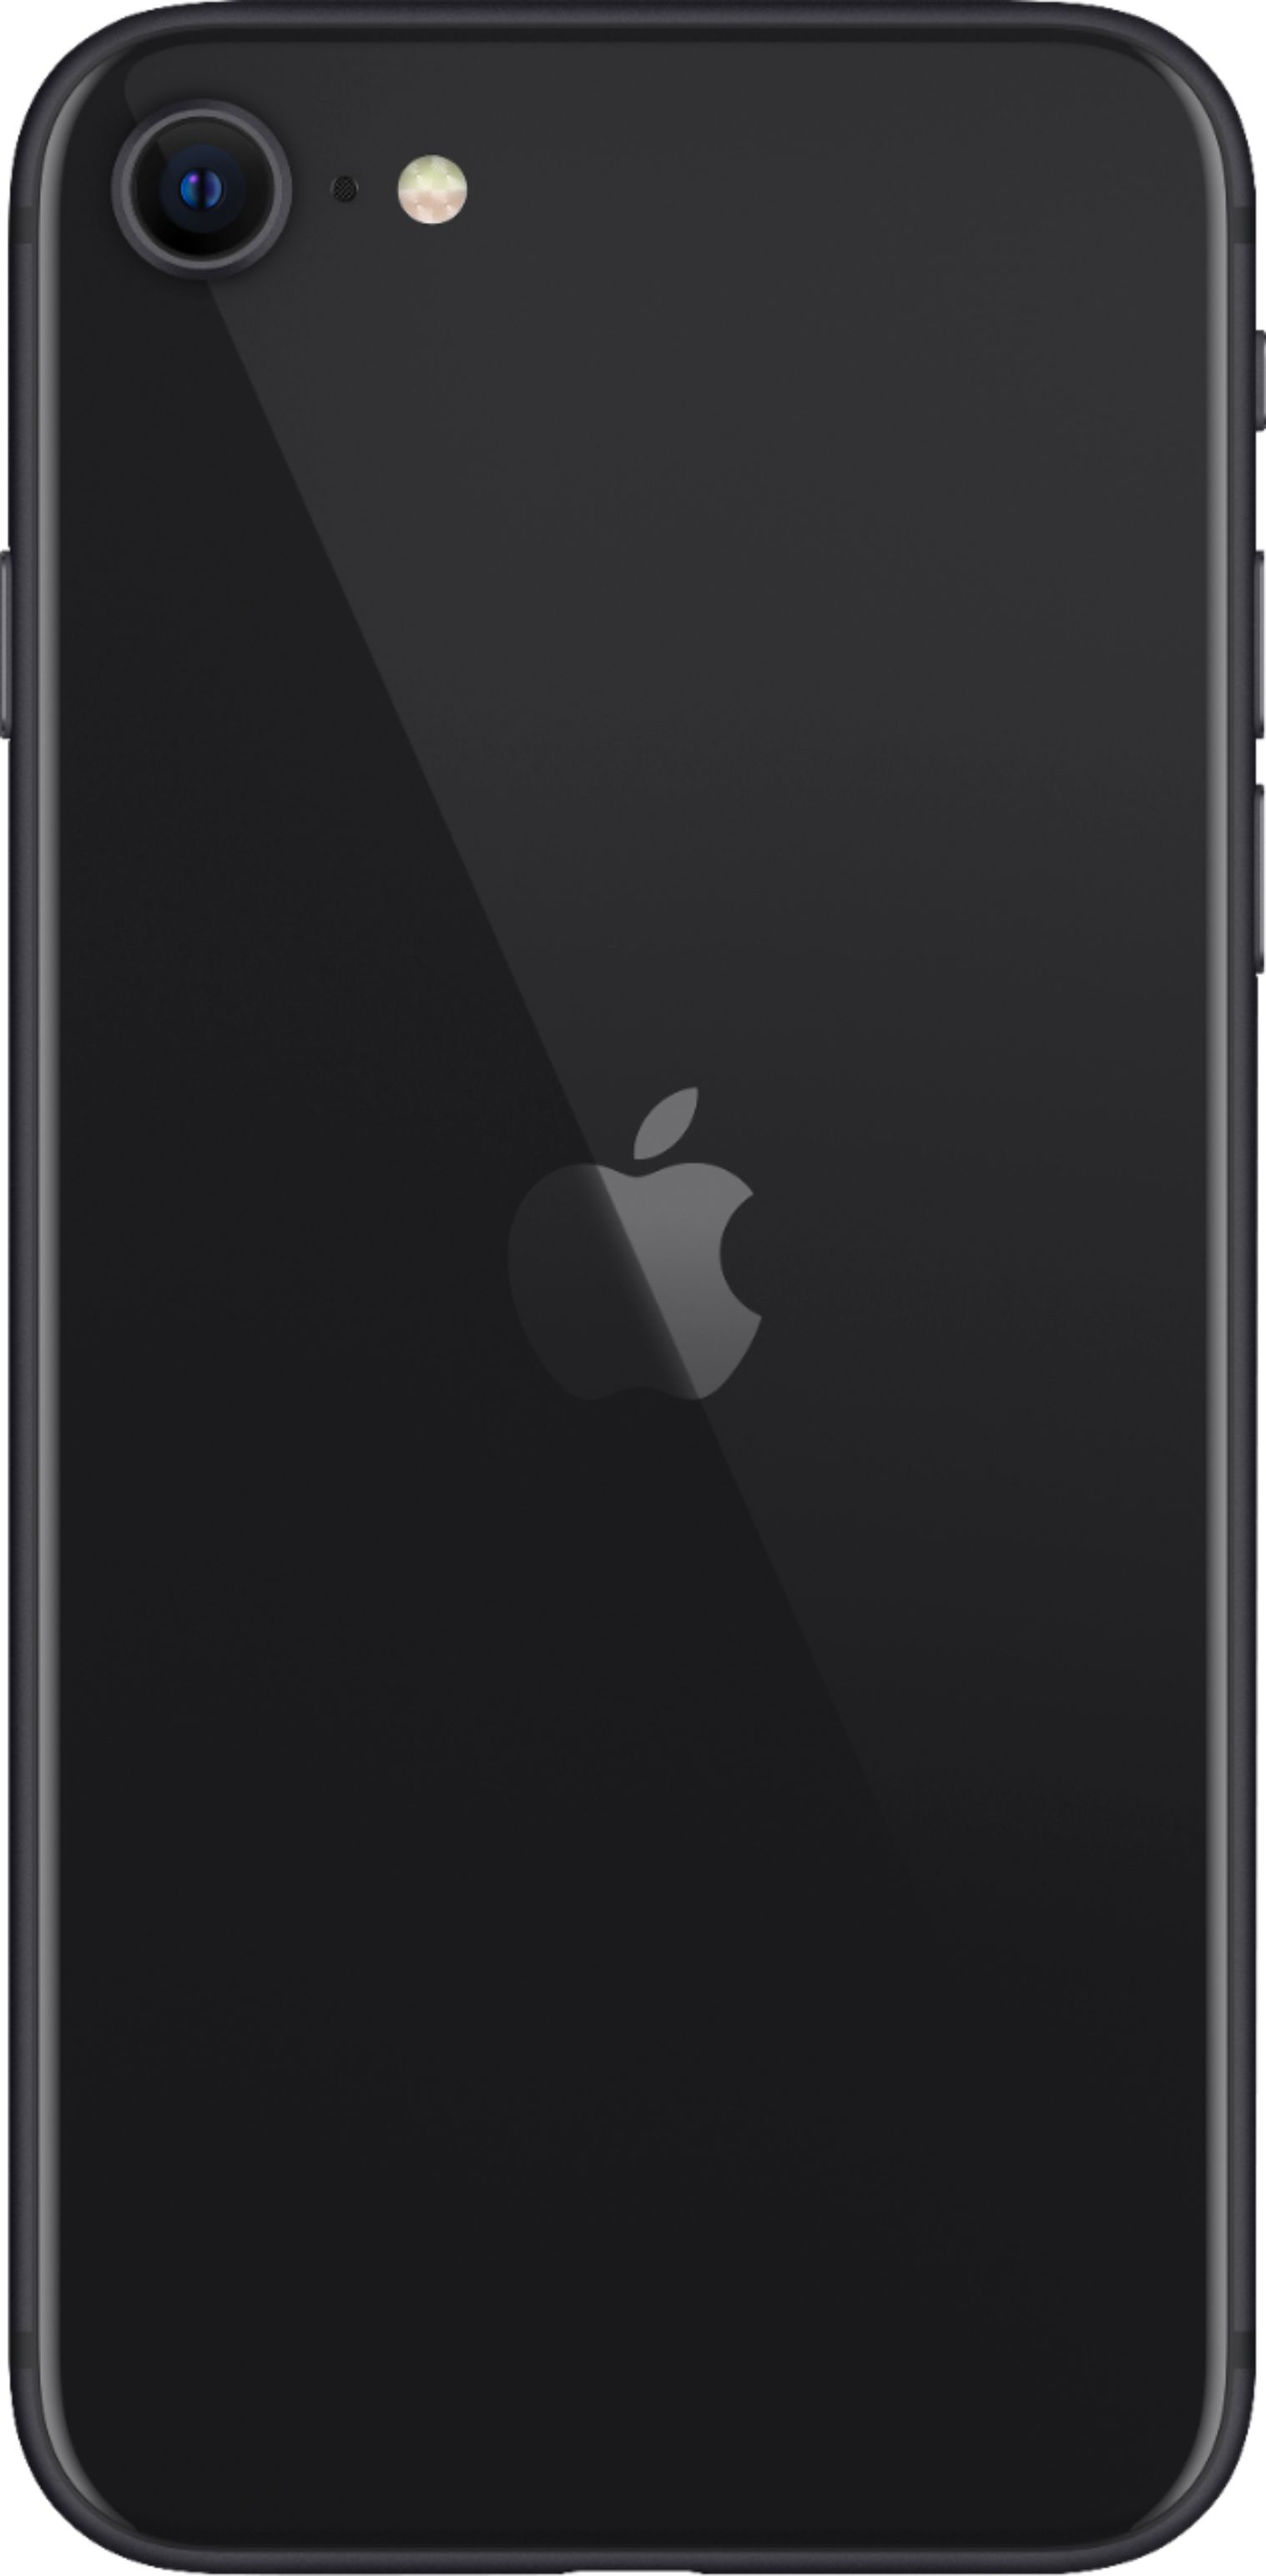 スマートフォン/携帯電話 スマートフォン本体 Best Buy: Apple iPhone SE (2nd generation) 128GB (Unlocked) Black MXCT2LL/A